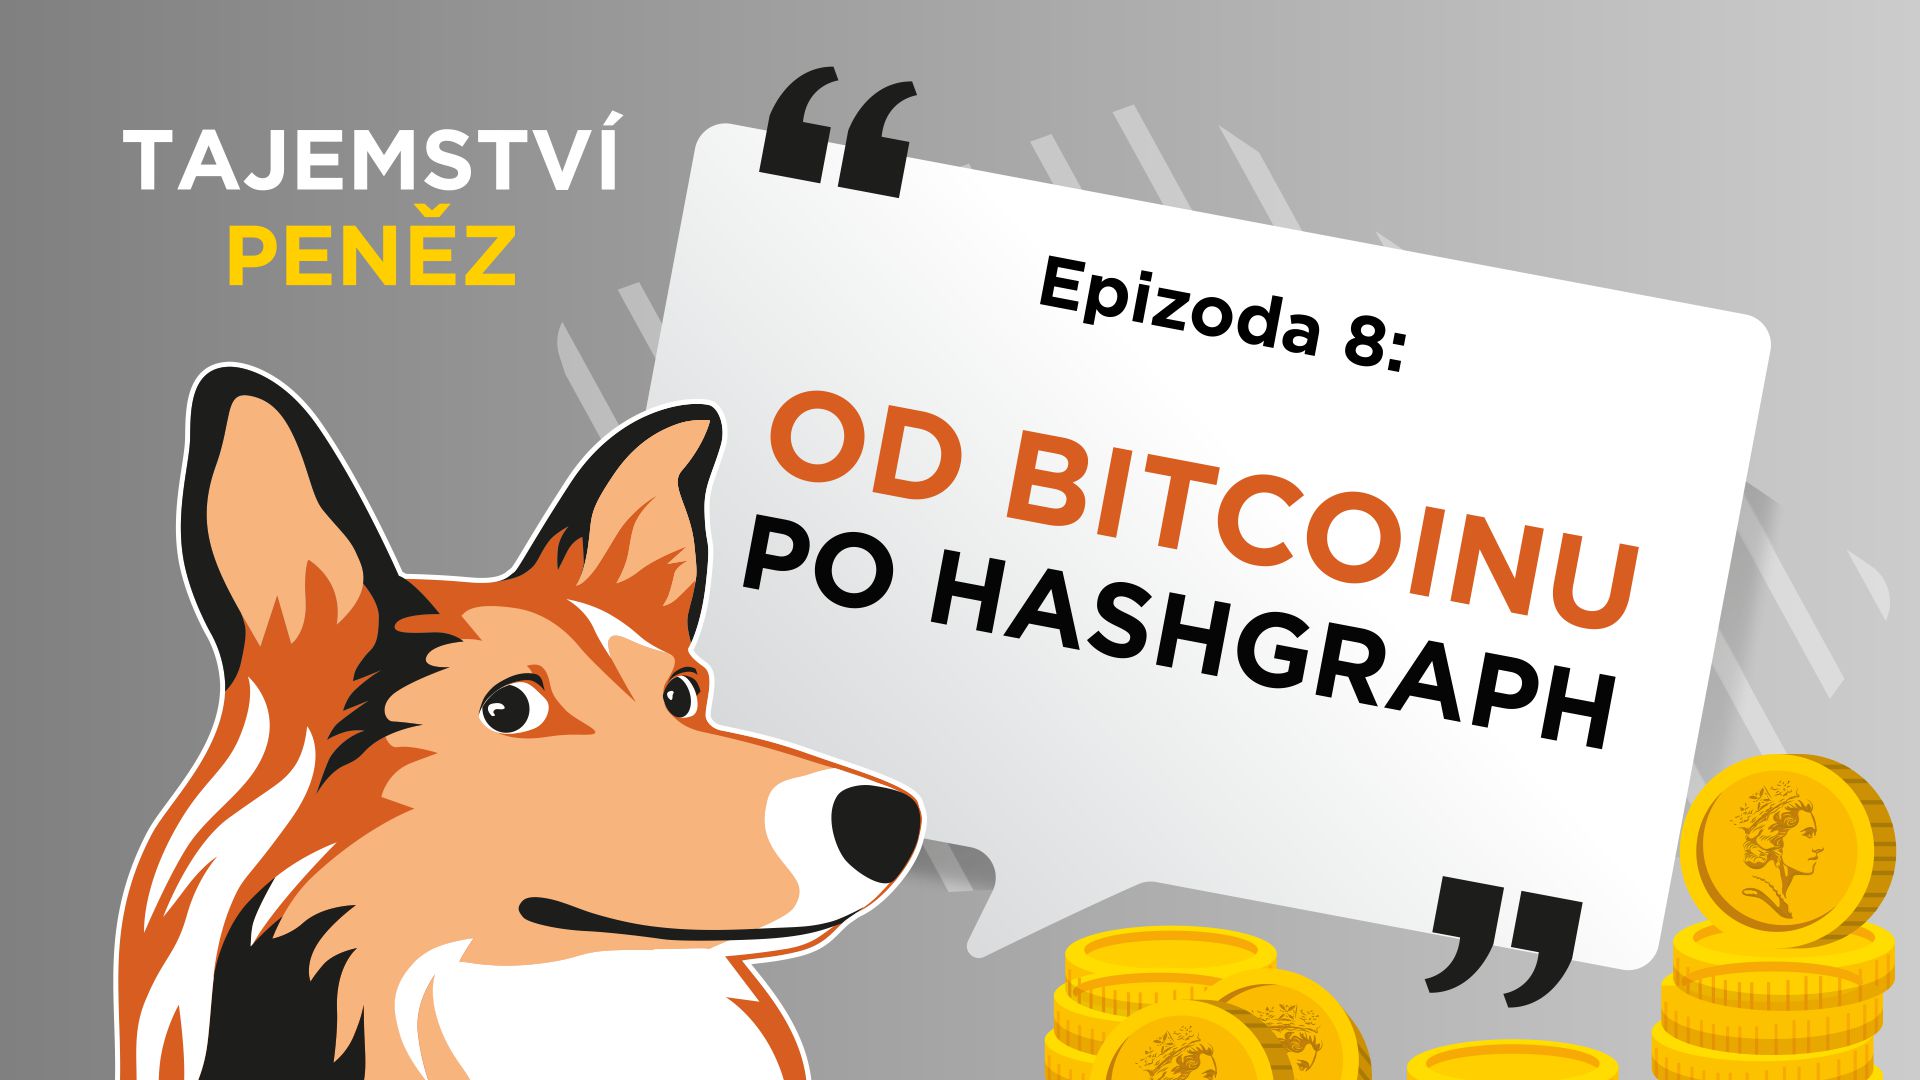 Tajemství peněz 8 : Od bitcoinu po hasgraph